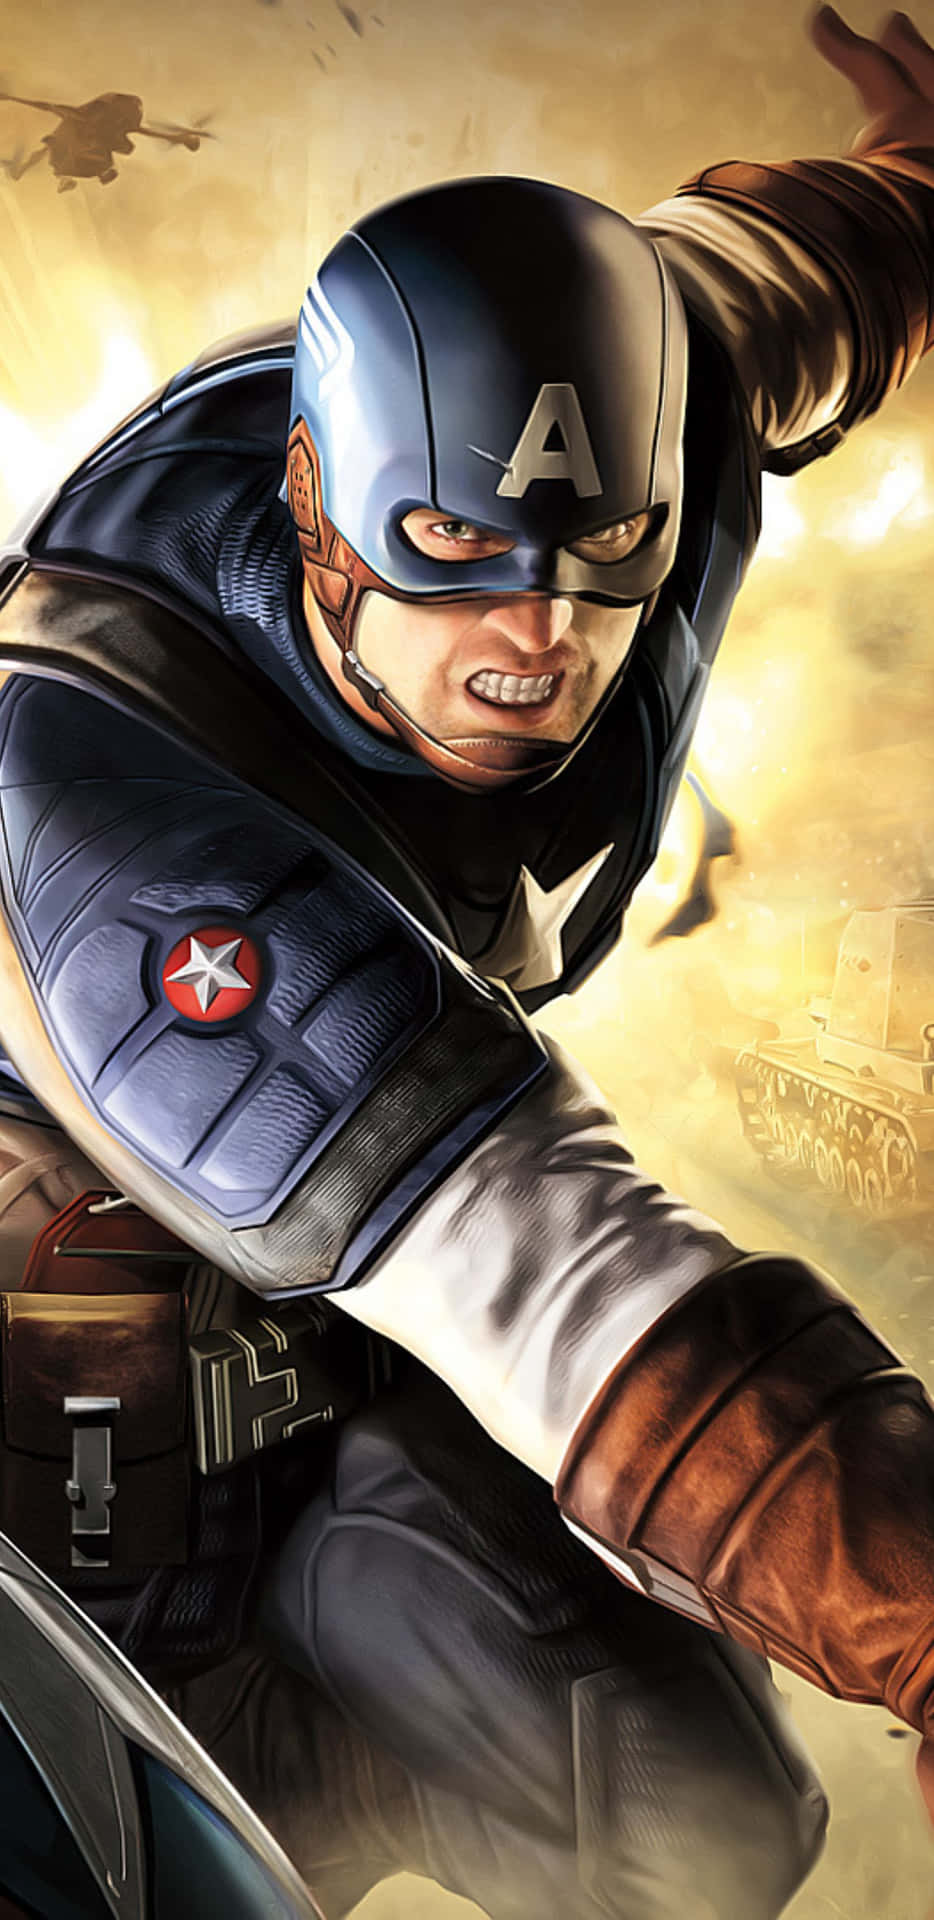 Fondode Pantalla De Capitán América Para Pixel 3xl, Inspirado En El Juego De Super Soldier.